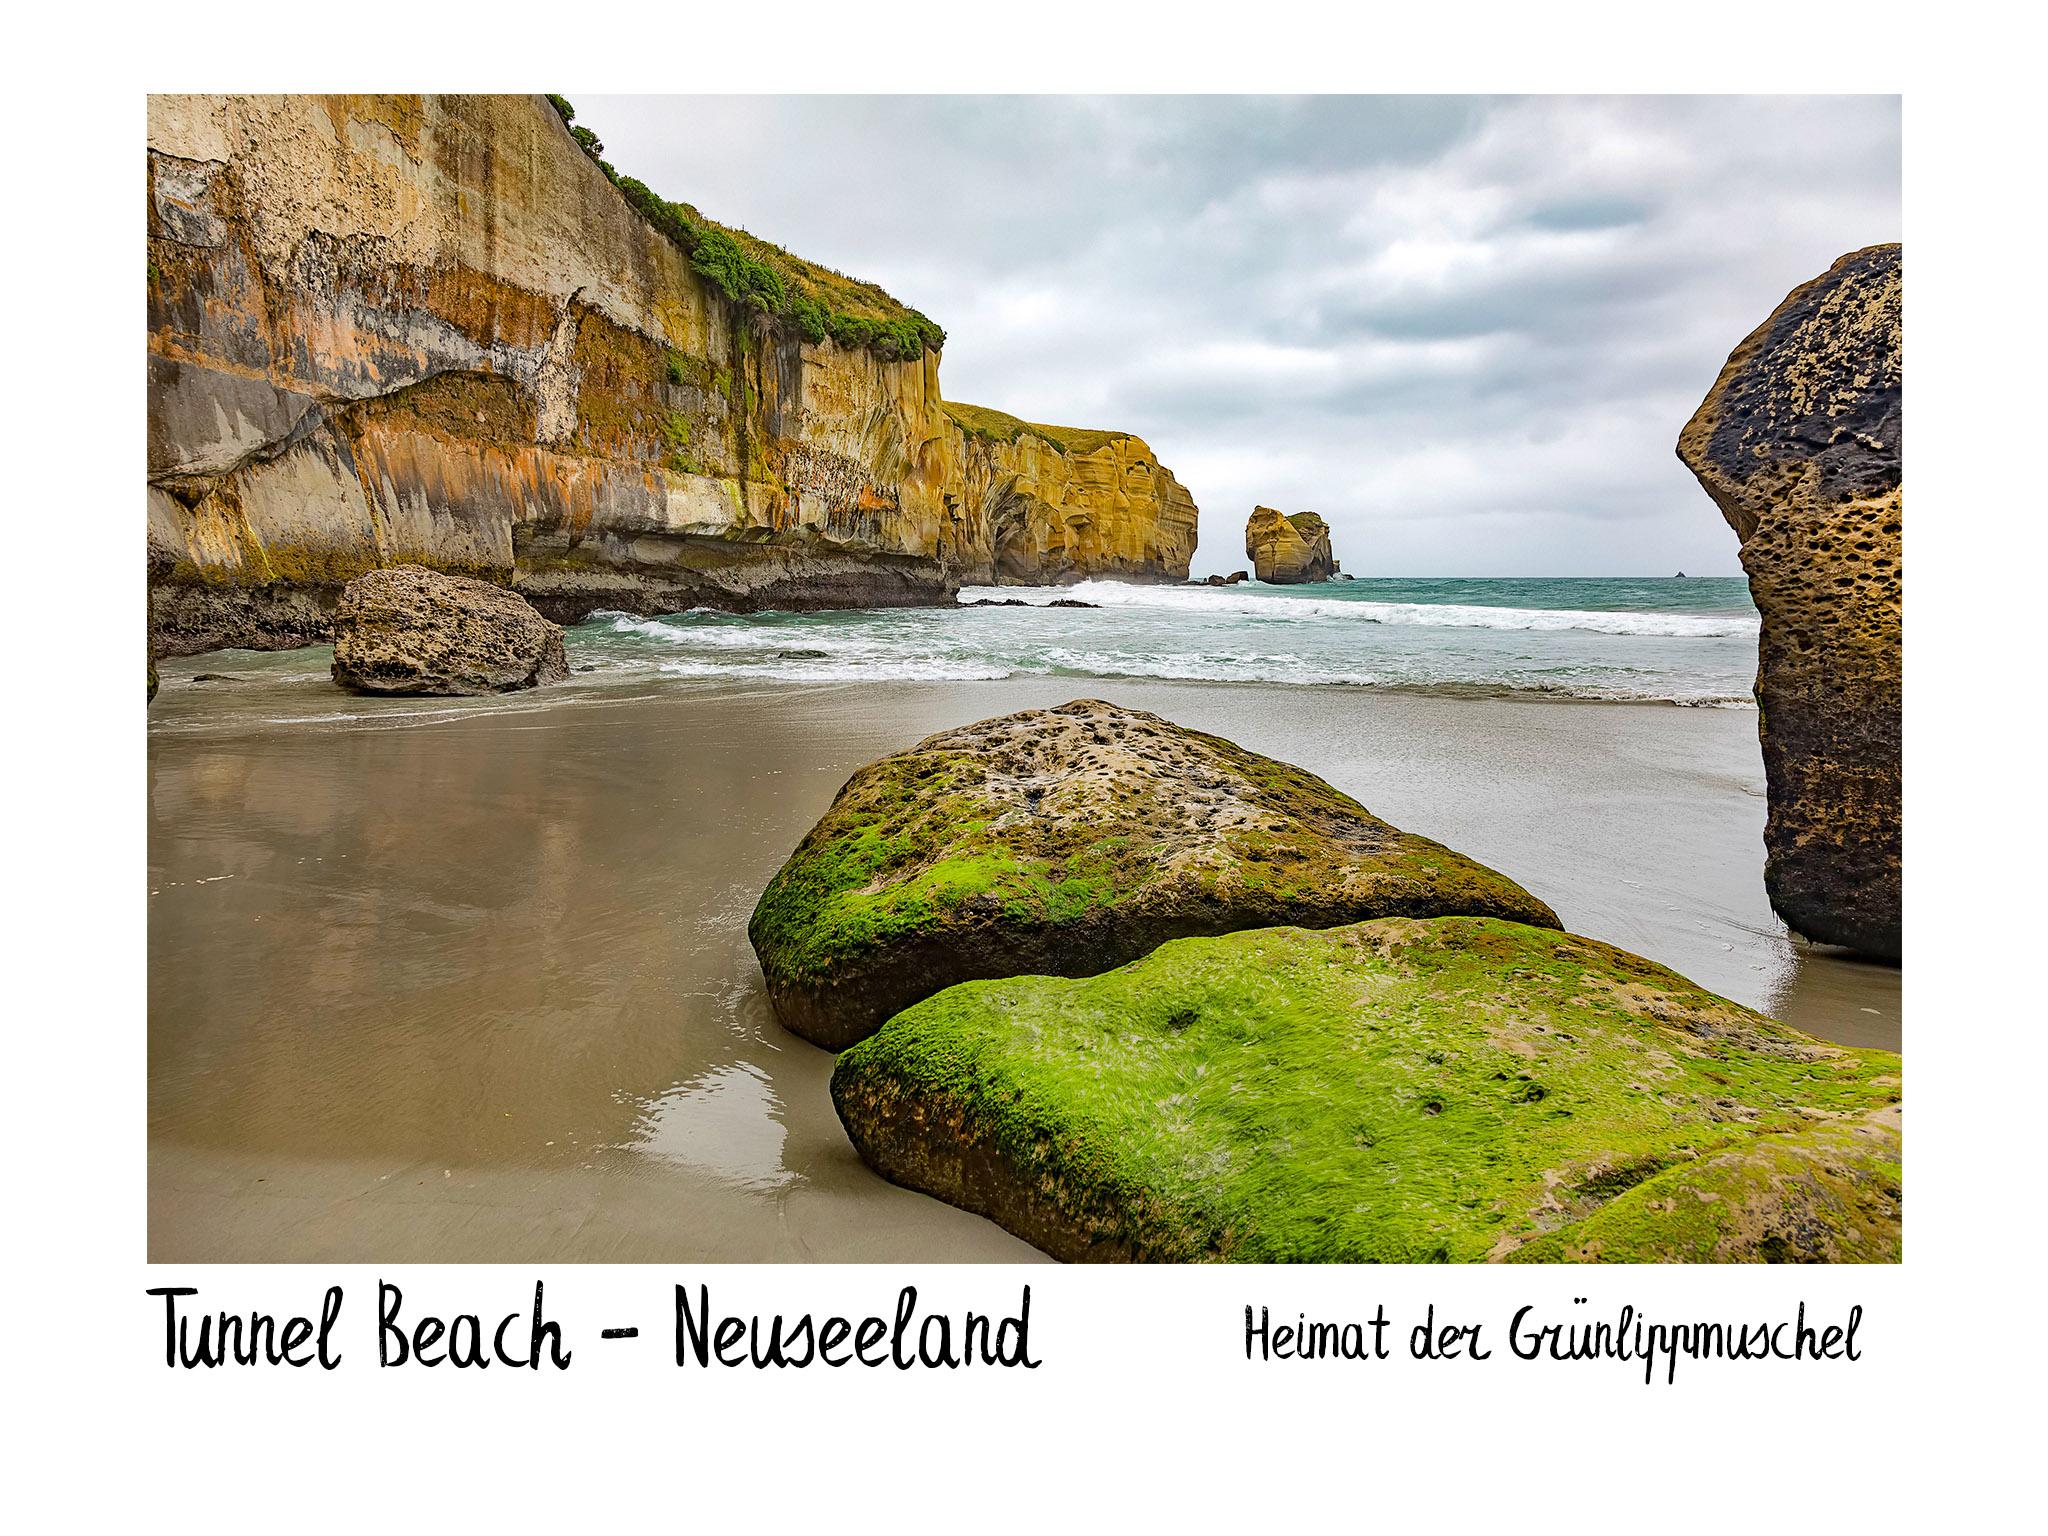 Tunnel Beach - Neuseeland: Heimat der Grünlippmuschel